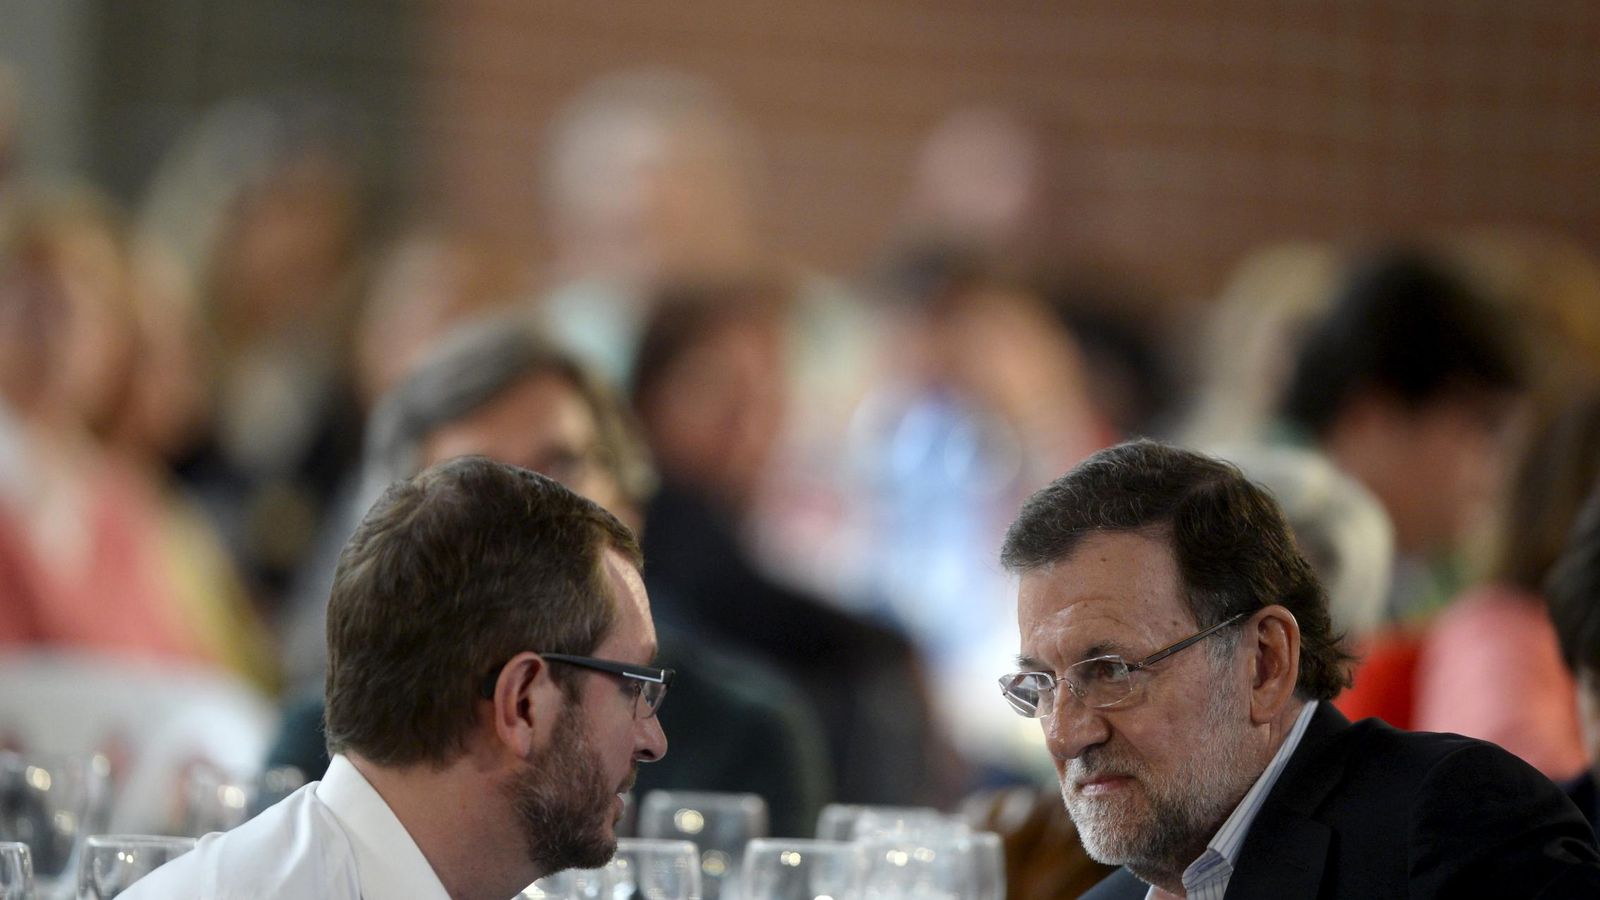 Foto: Mariano Rajoy dialoga en la intimidad junto al vicesecretario sectorial para asuntos sociales, Javier Maroto, durante un acto en Vitoria. REUTERS/Vincent West